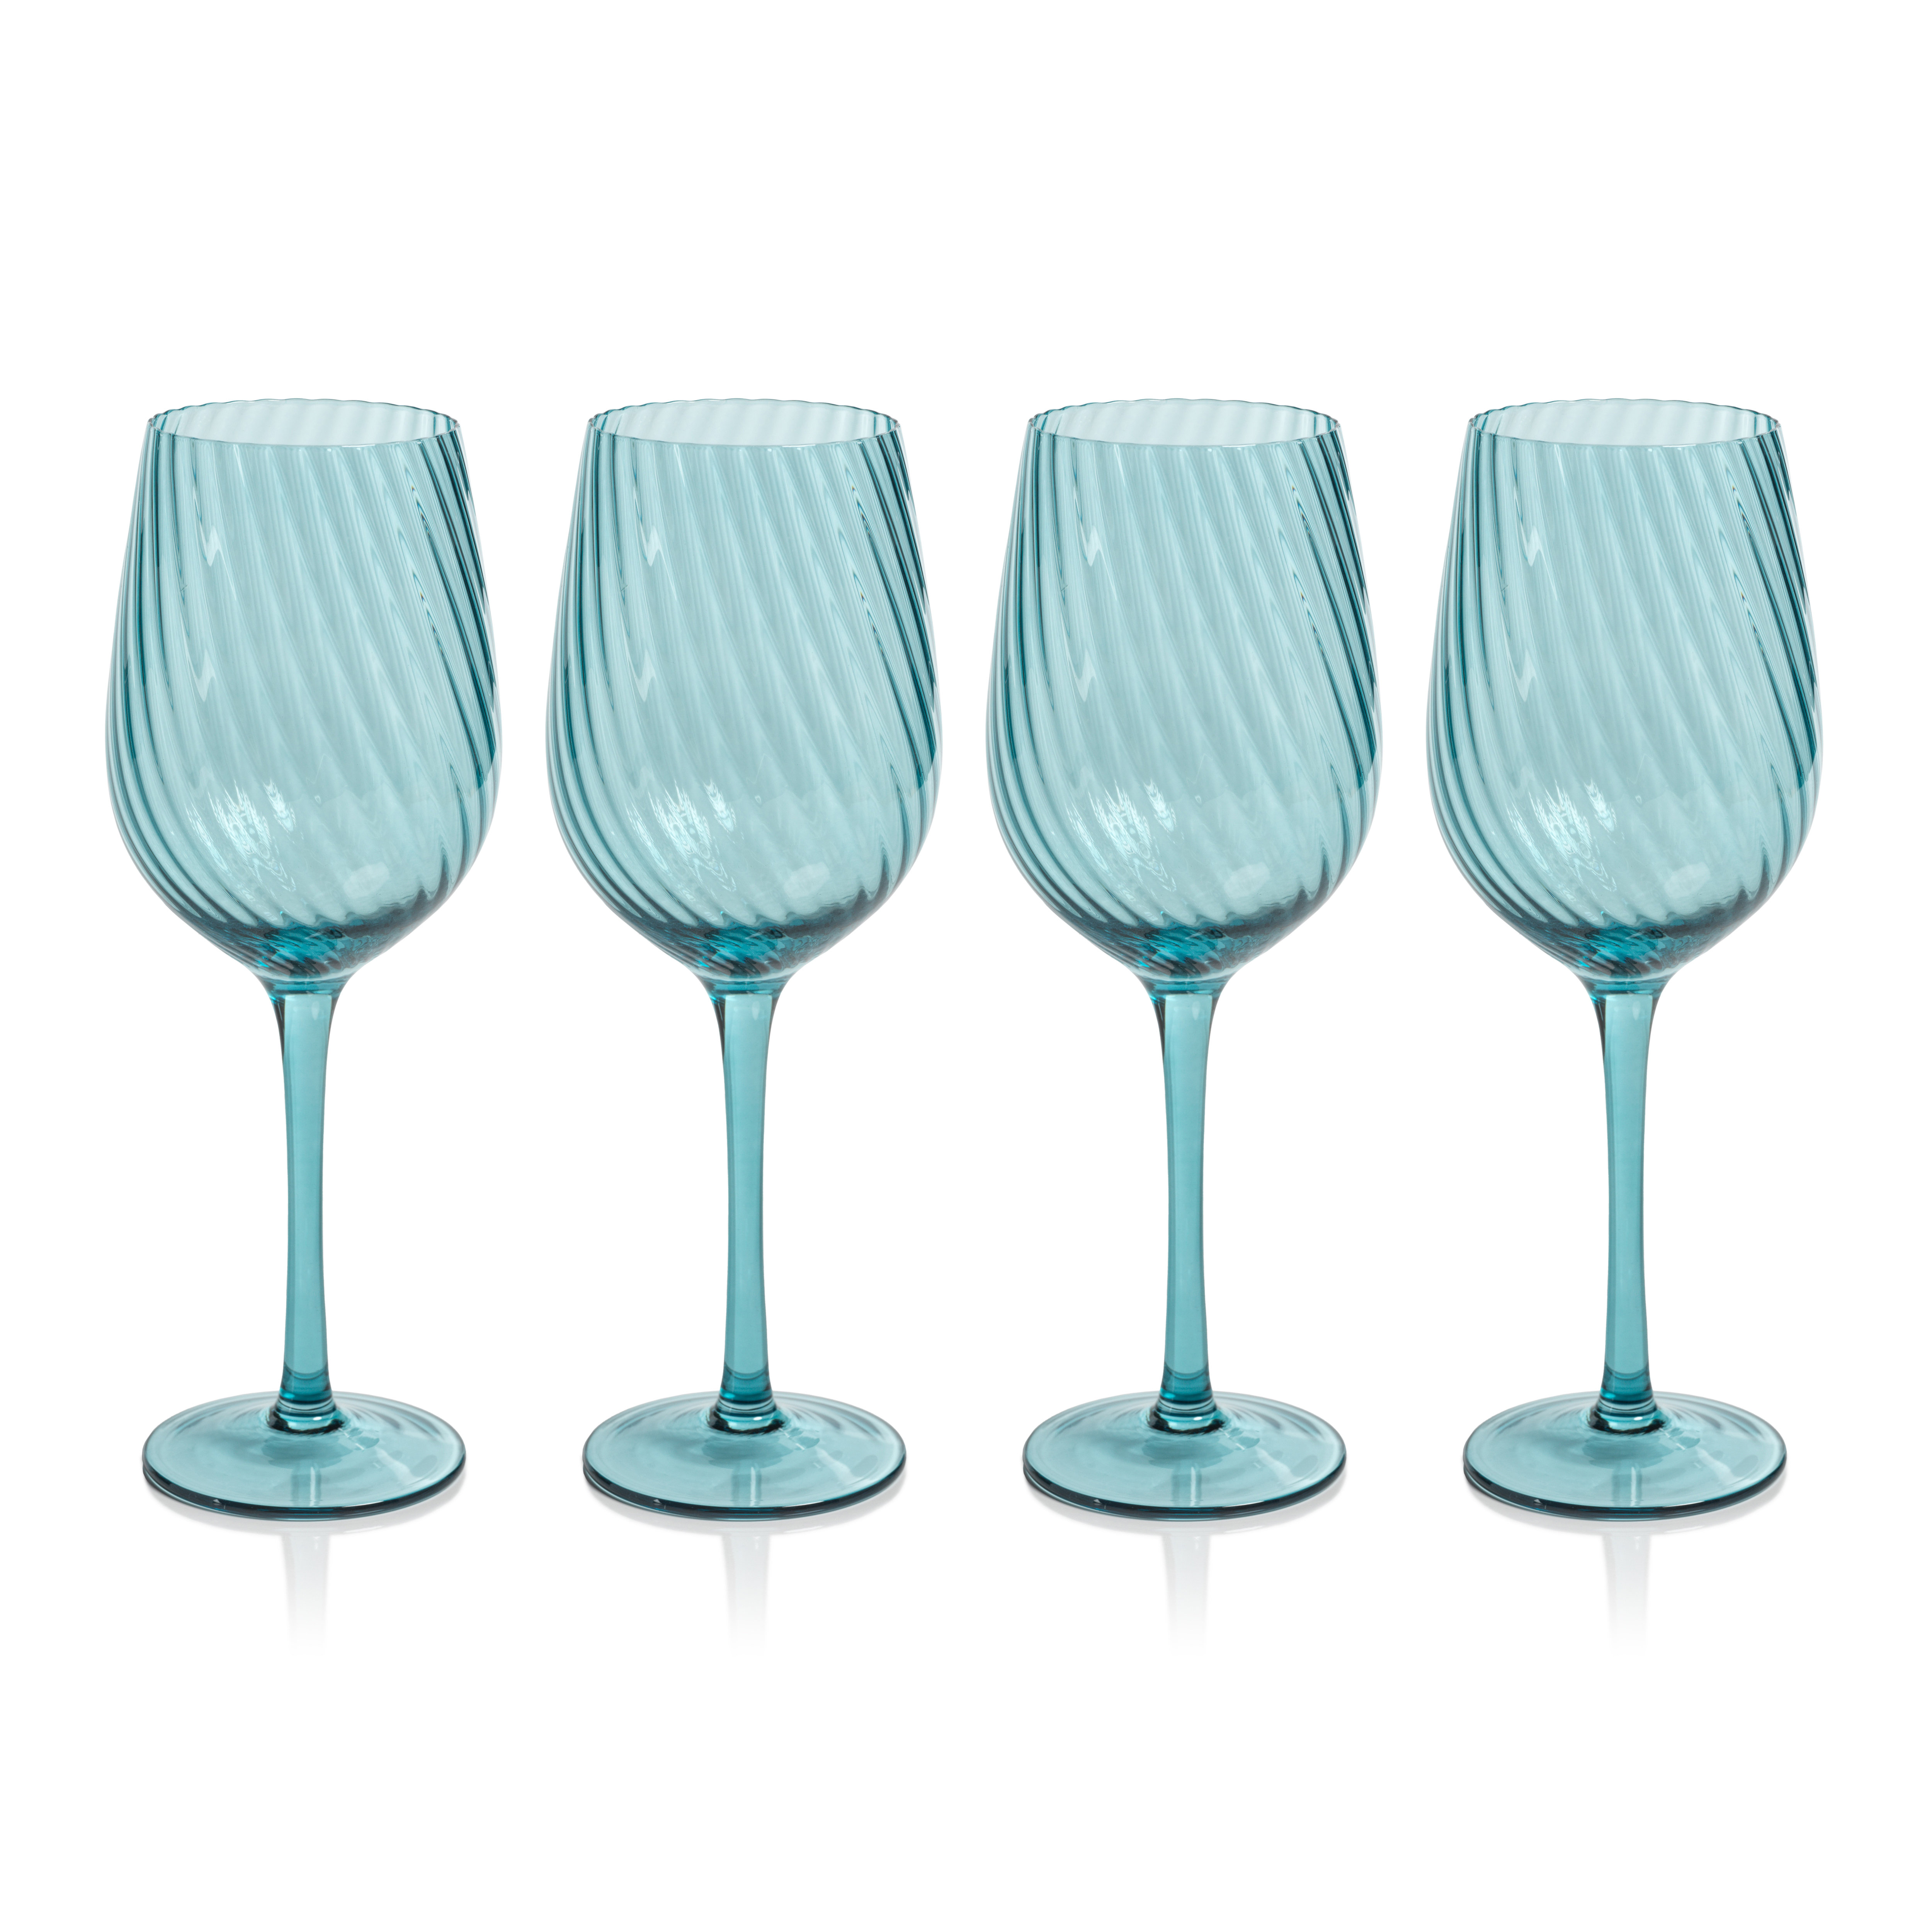 Red & White Swirl Martini glasses 12 oz set of Four glasses